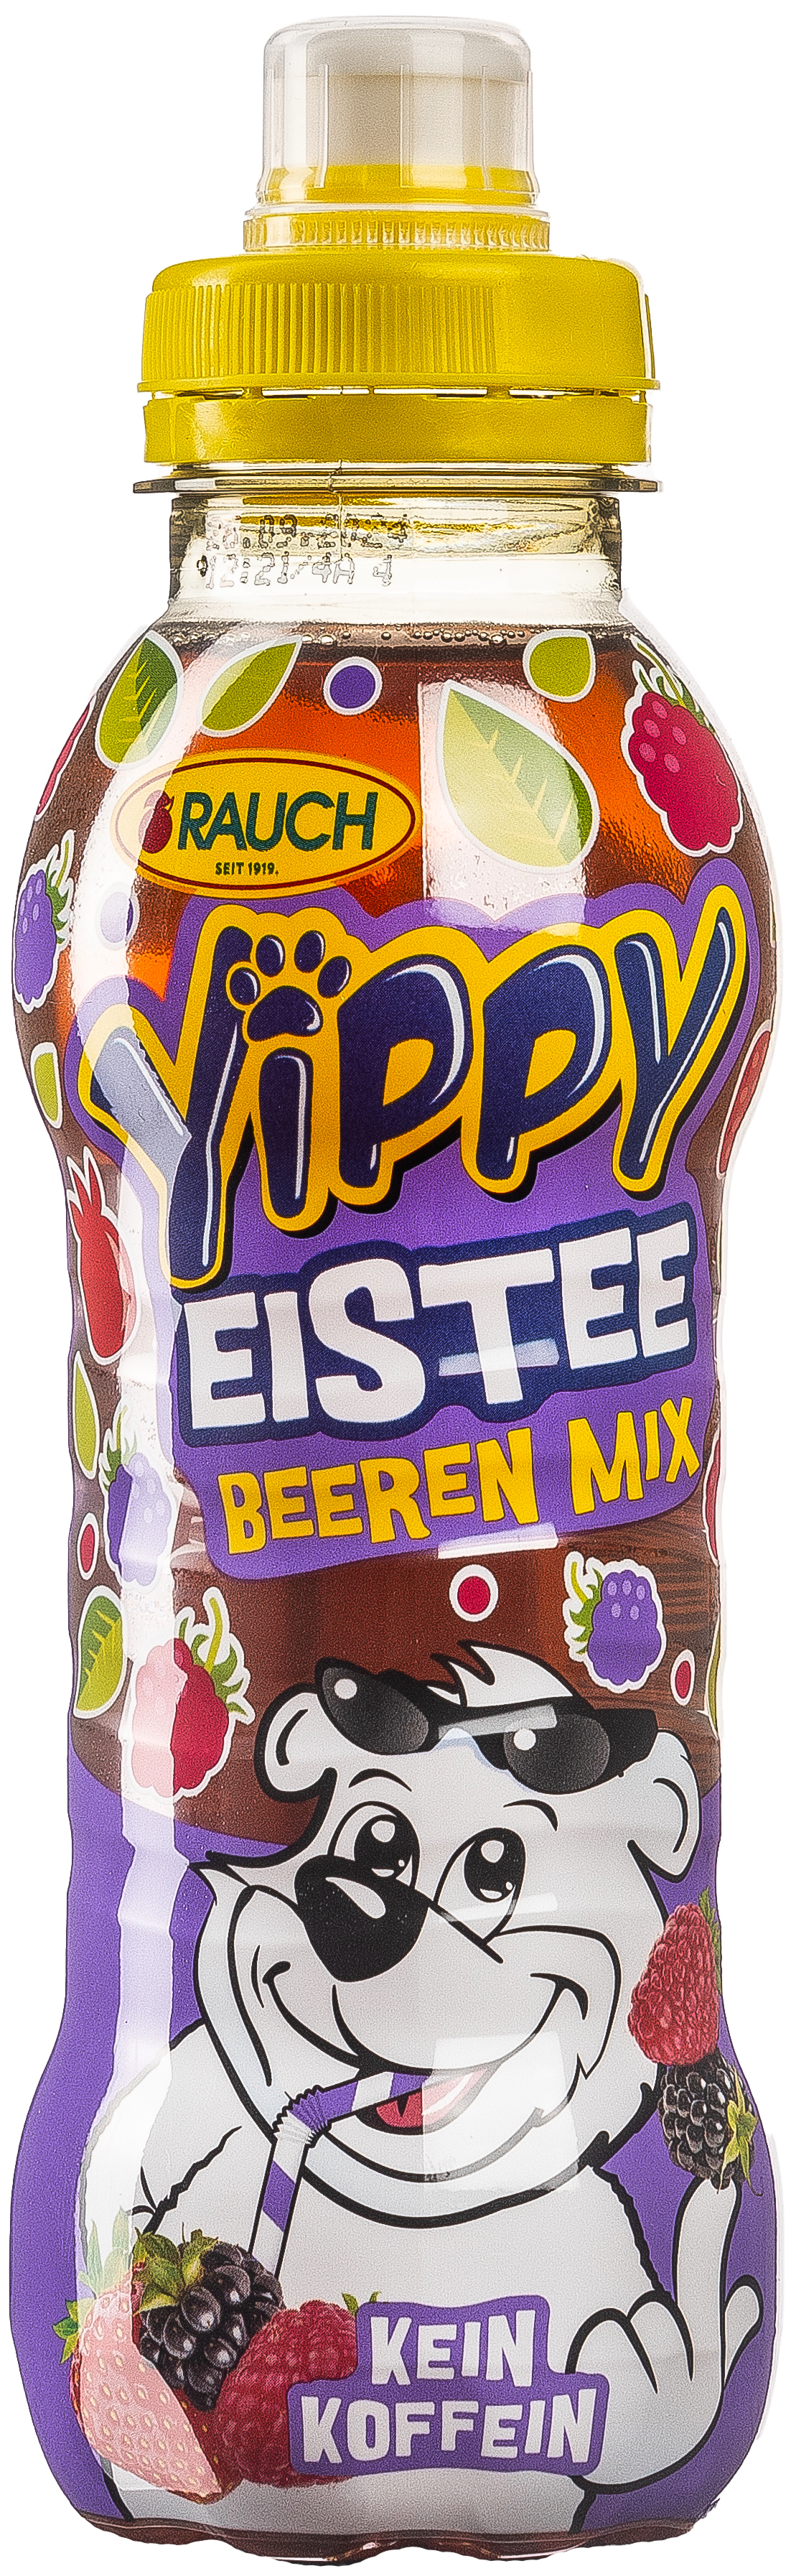 Yippy Eistee Beeren Mix 0,33L EINWEG